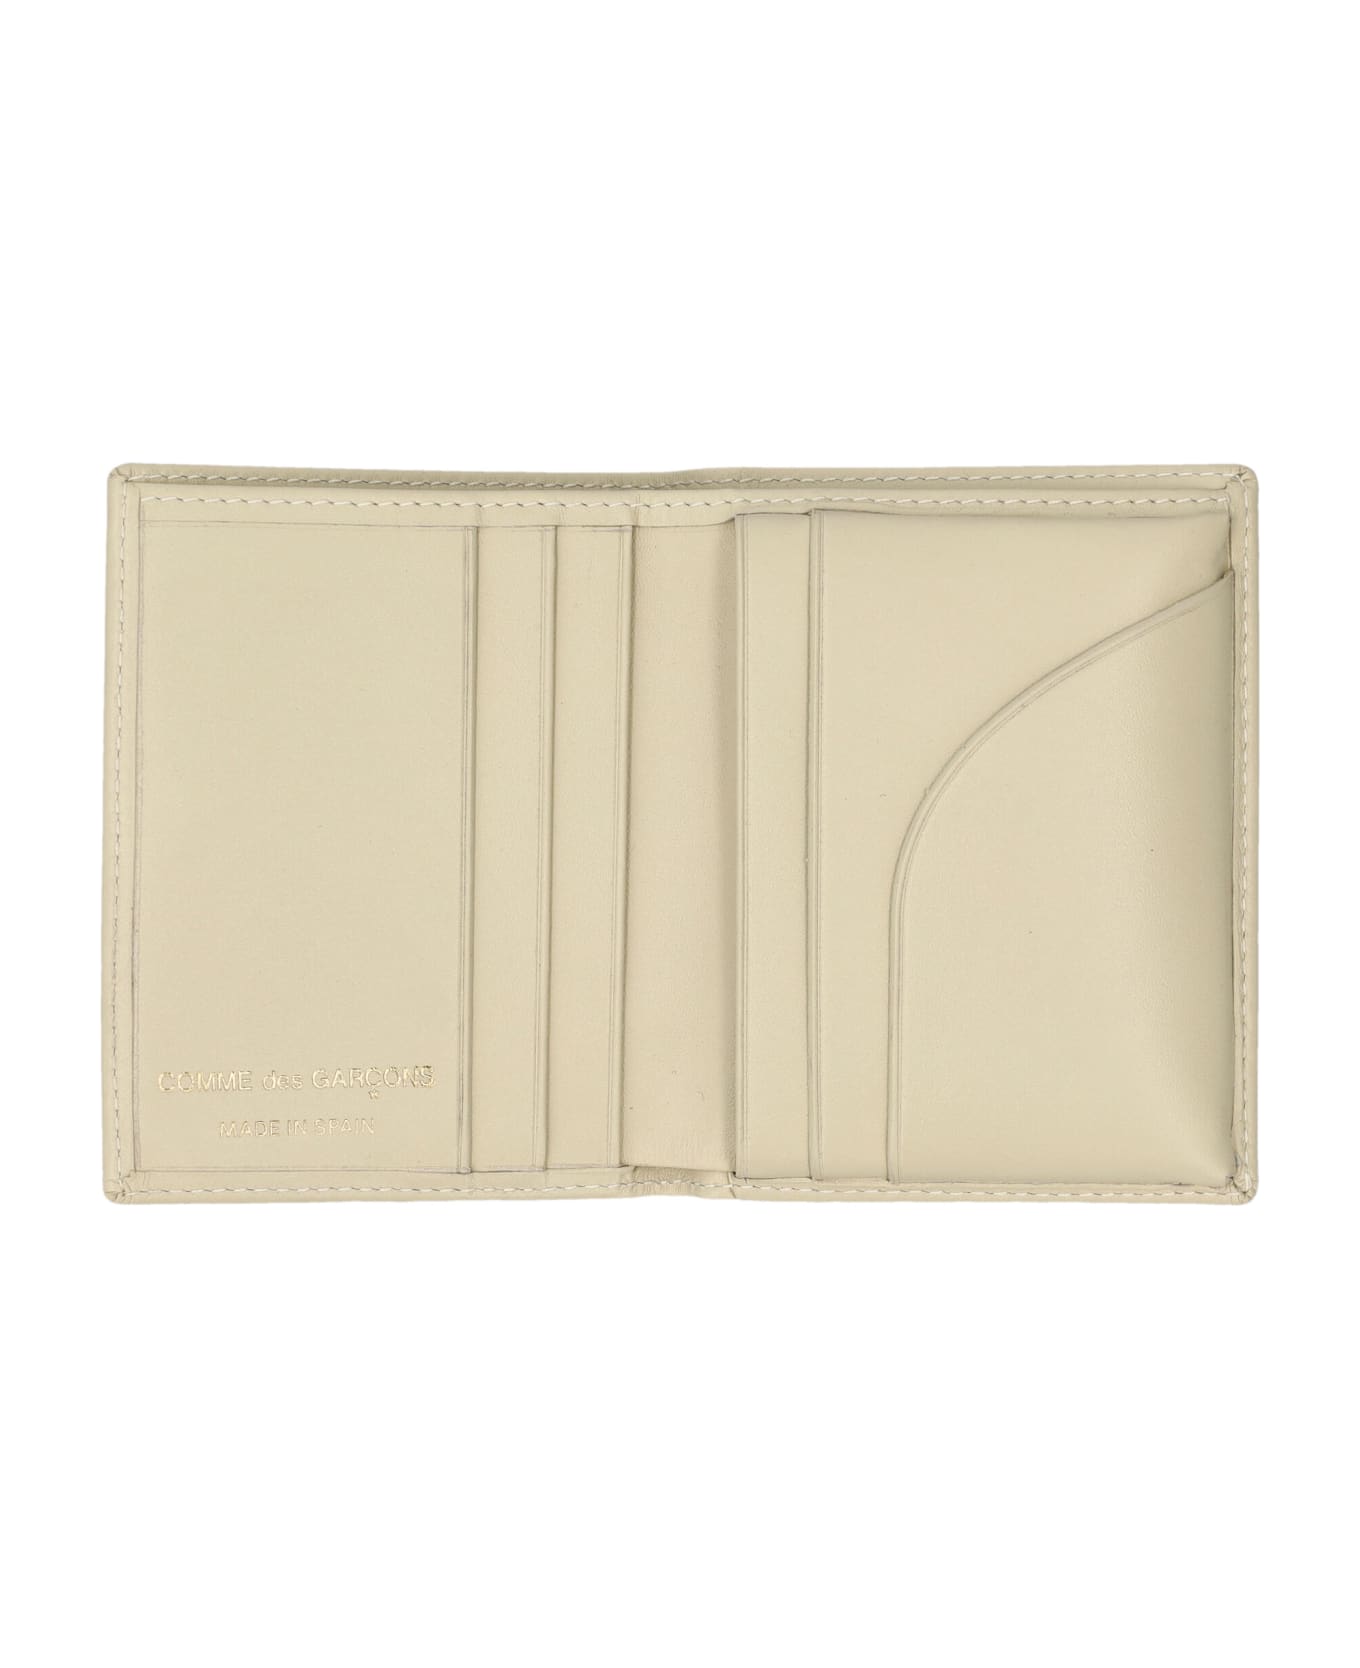 Comme des Garçons Wallet Classic Cardholder - OFF WHITE 財布